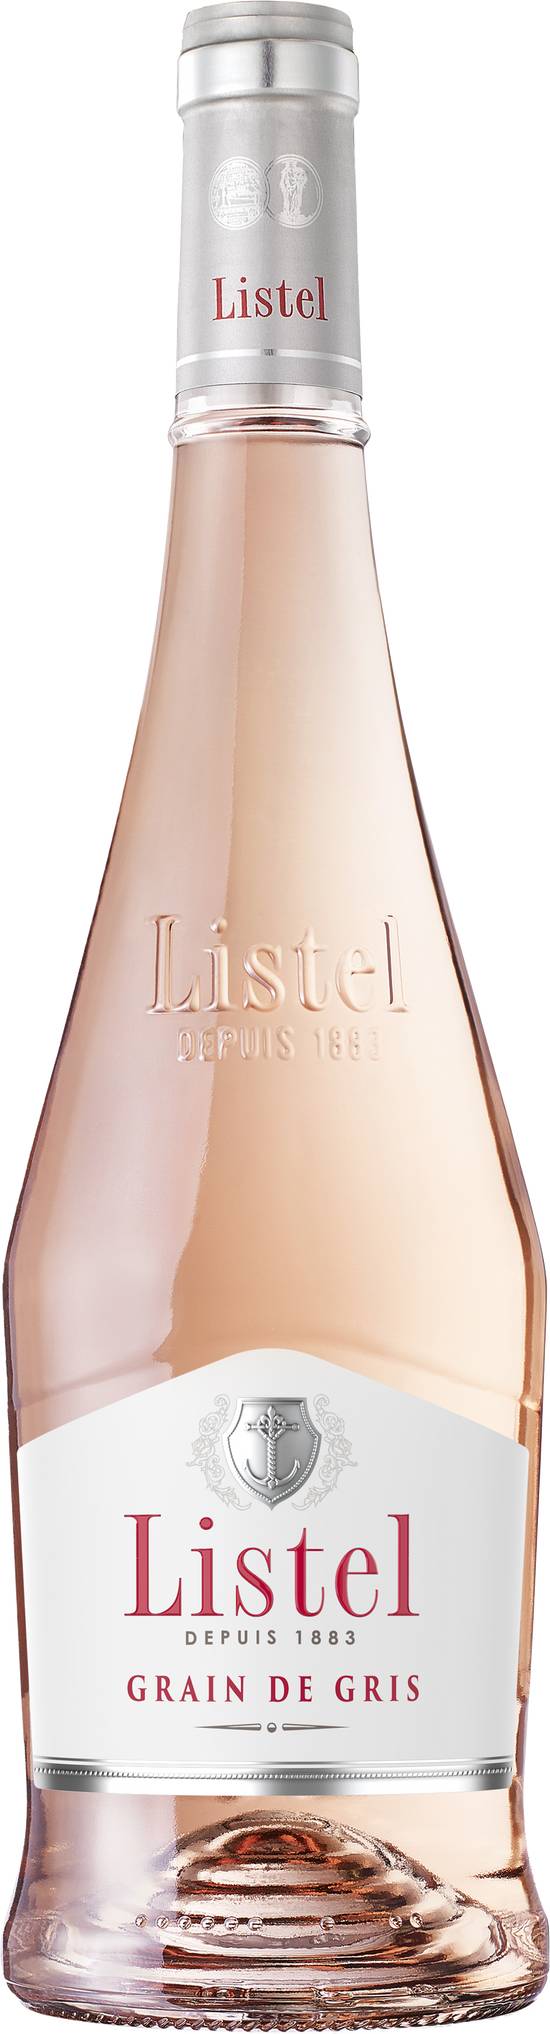 Listel - Vin rosé grain de gris 1883 (750 ml)